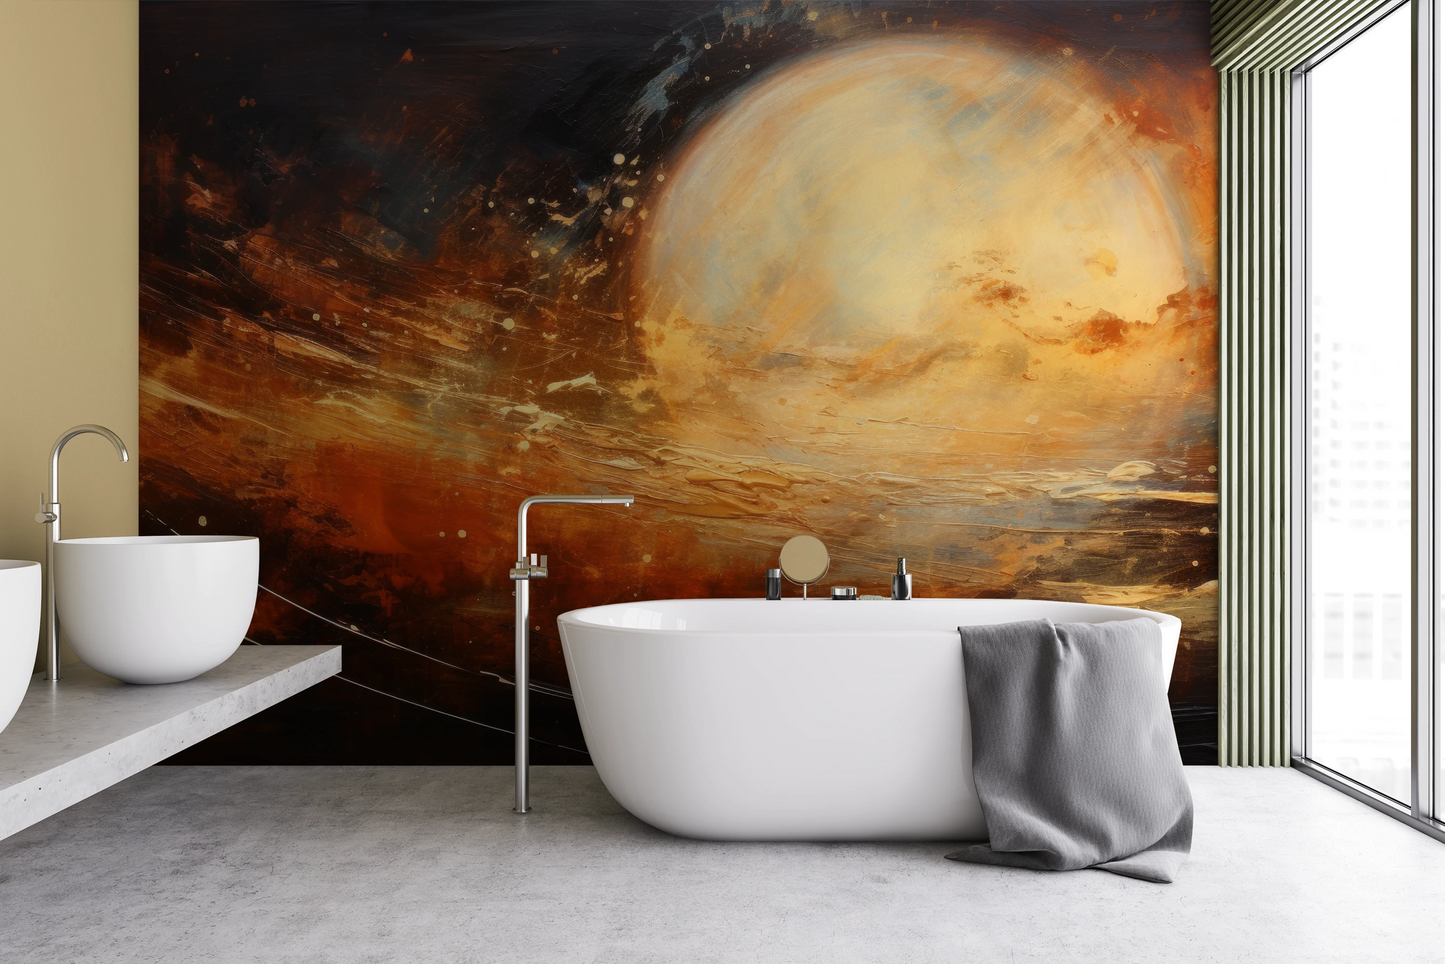 Fototapeta malowana o nazwie Saturn's Embrace pokazana w aranżacji wnętrza.